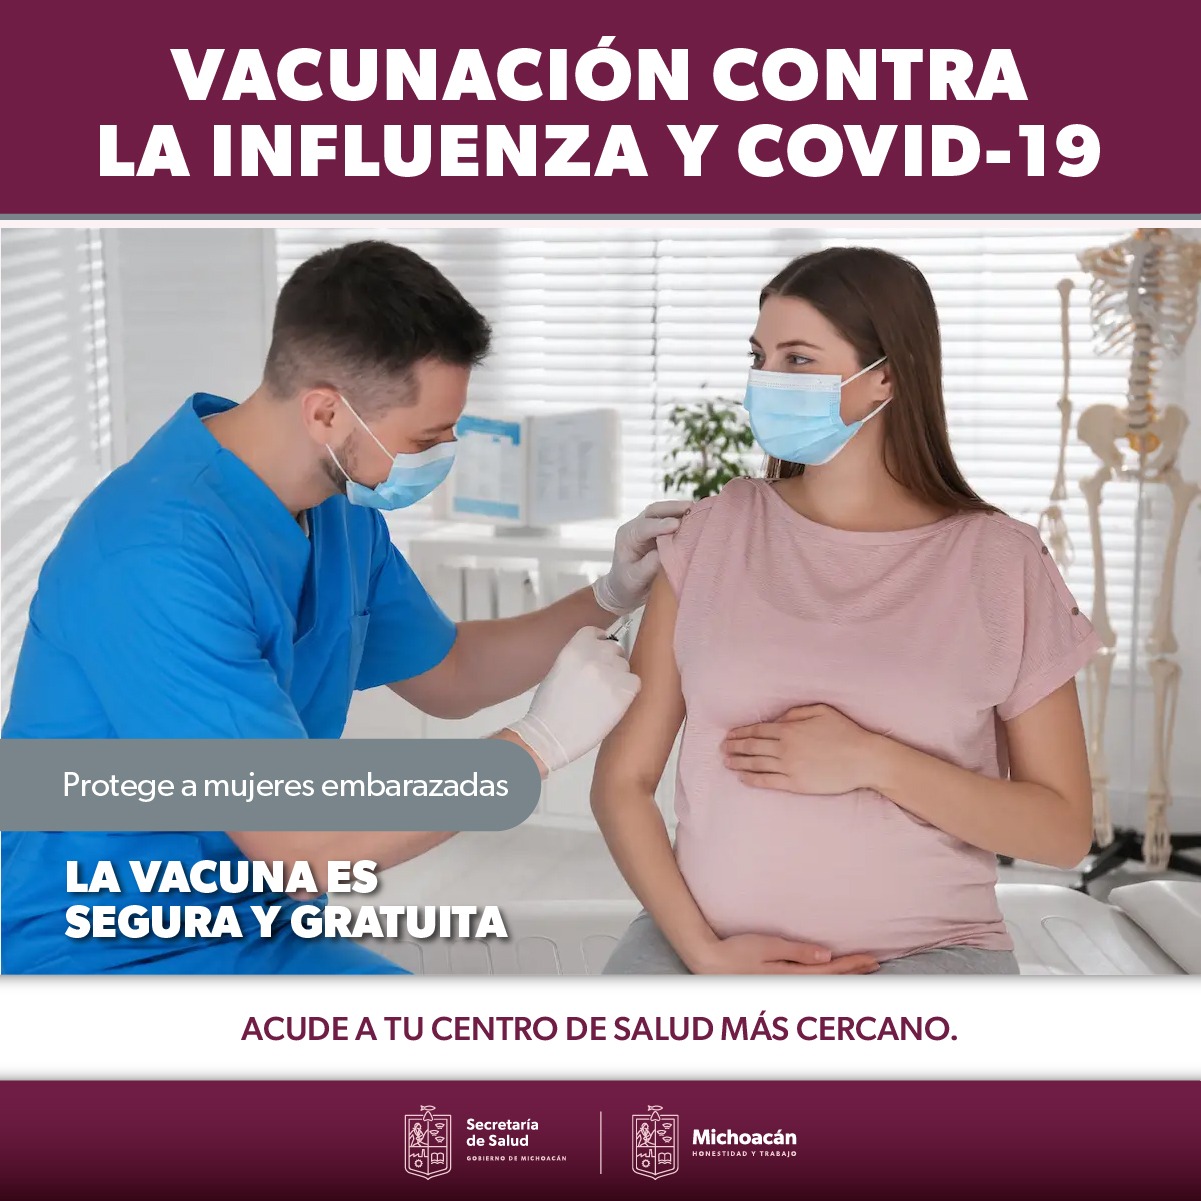 Vacuna contra la influenza, protege la salud de mujeres embarazadas